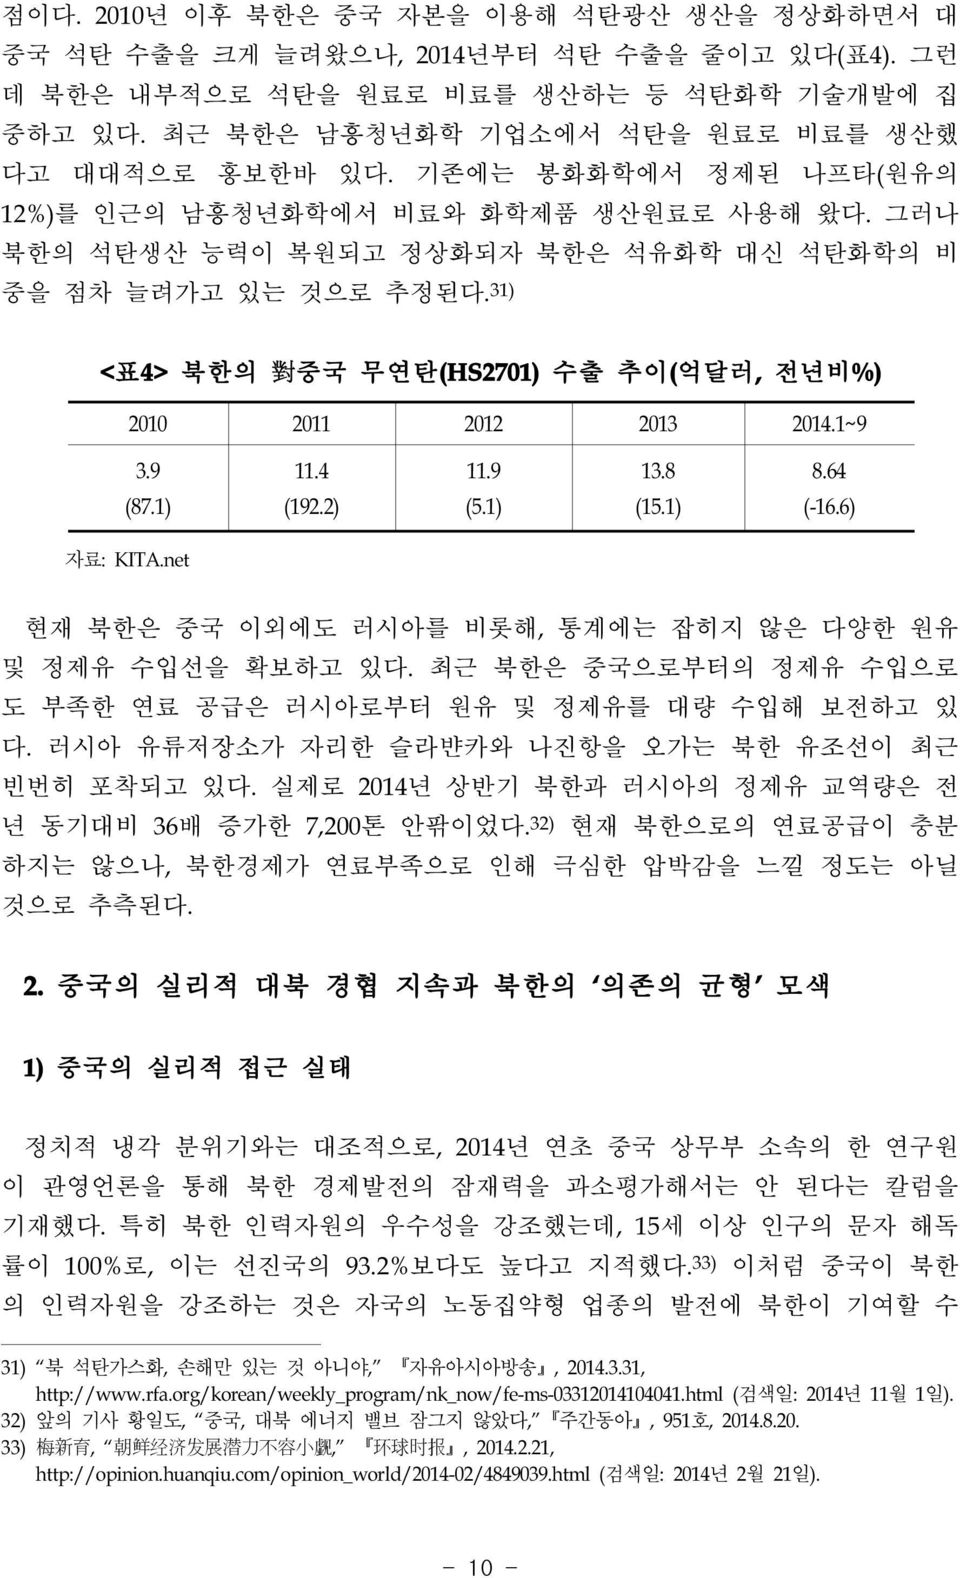 31) <표4>북한의 對 중국 무연탄(HS2701)수출 추이(억달러,전년비%) 2010 2011 2012 2013 2014.1~9 3.9 (87.1) 11.4 (192.2) 11.9 (5.1) 13.8 (15.1) 8.64 (-16.6) 자료:KITA.